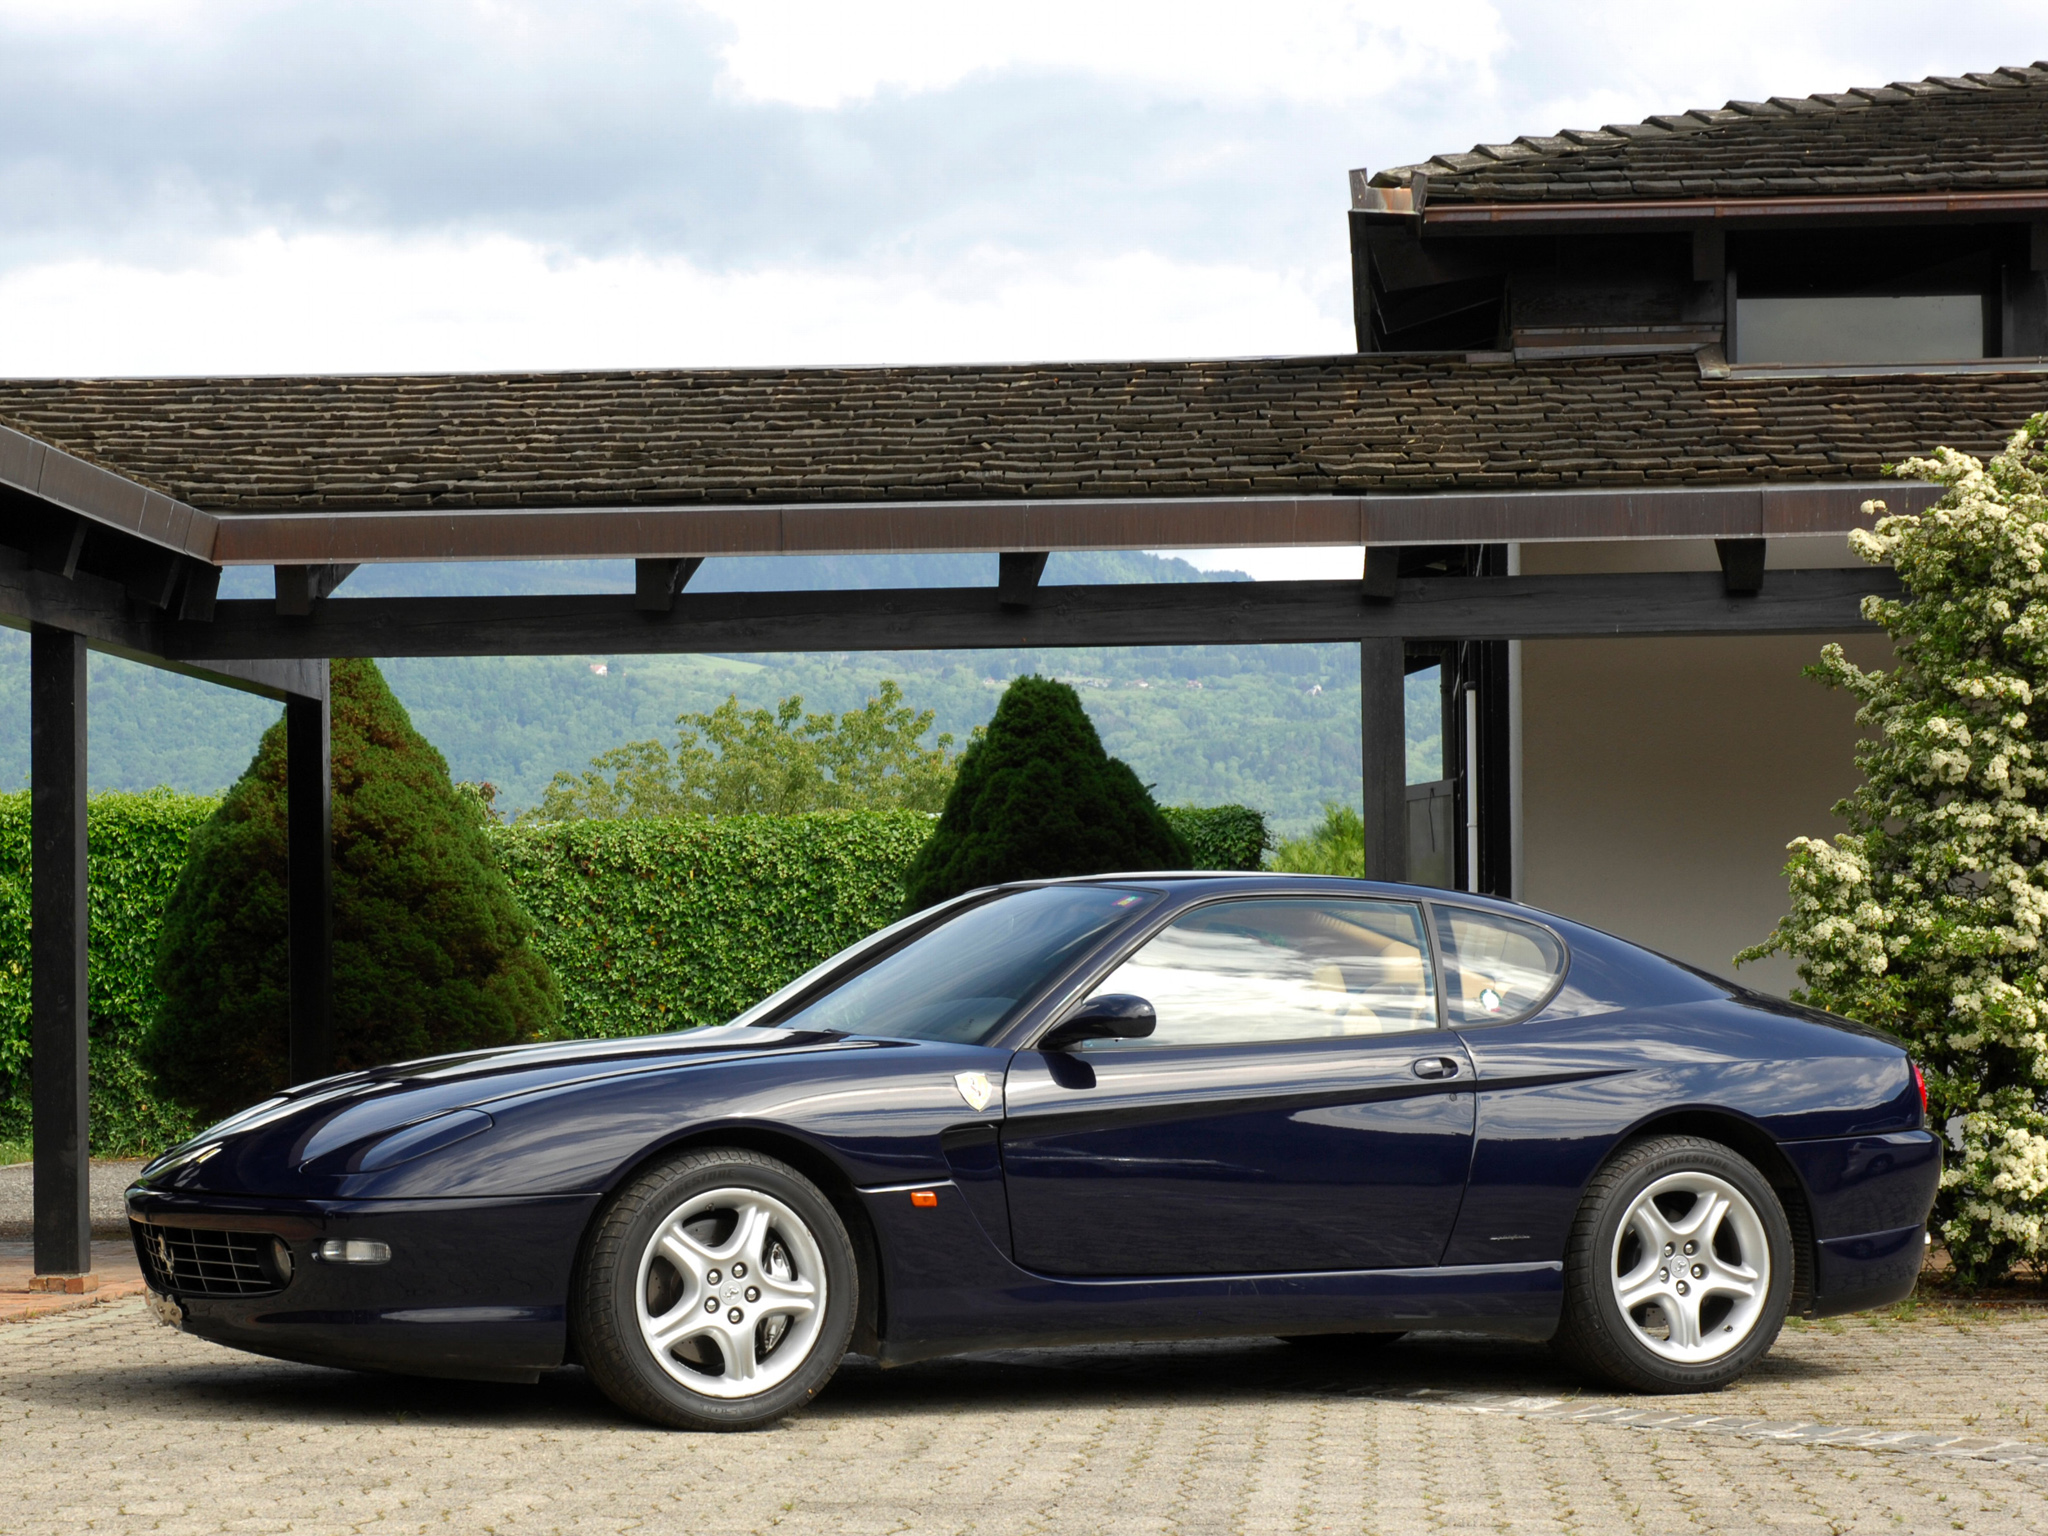 1998 03, Ferrari, 456, M, G t, Supercar, 1998, 2003 Wallpaper